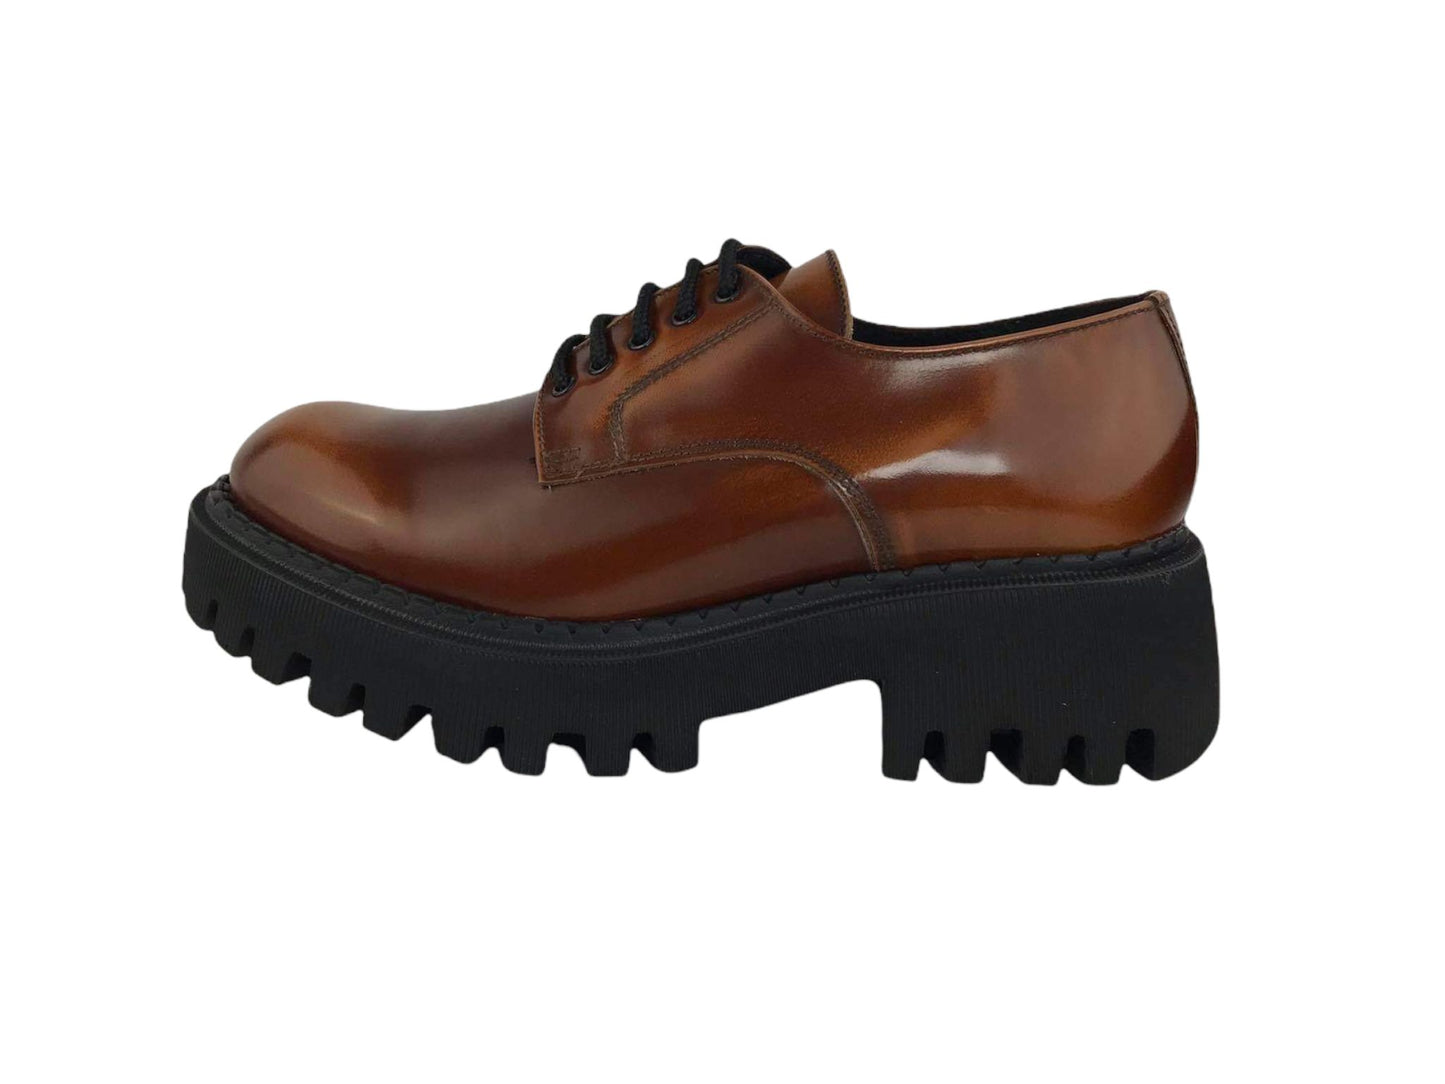 Marnat | Chaussures femme Ambra style Oxford à lacets en cuir ciré couleur caramel